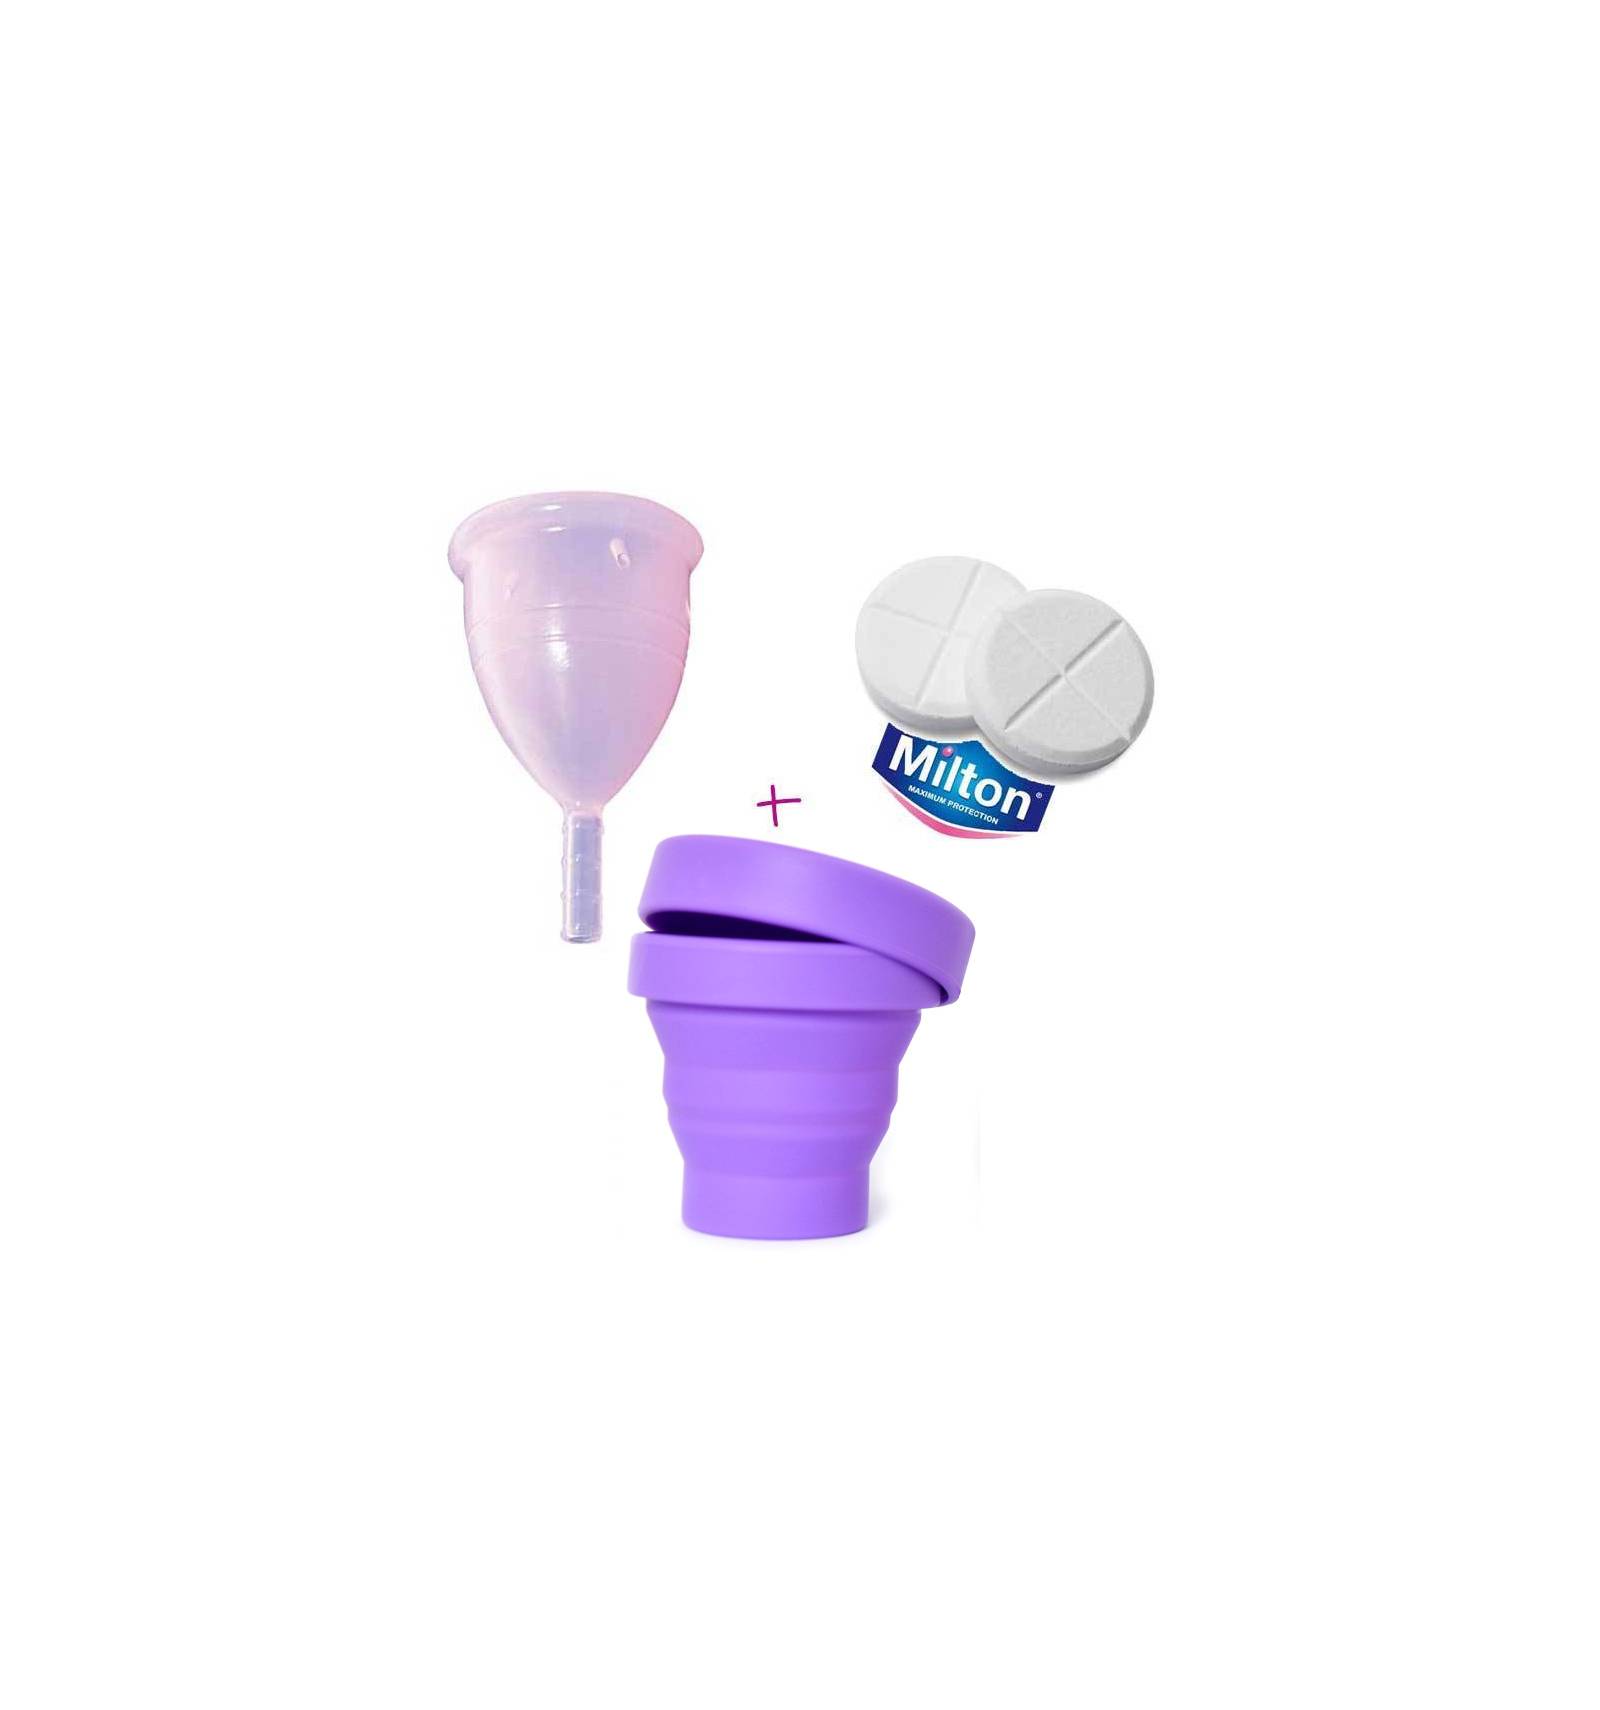 Esterilizador plegable para todas las Cup menstrual como Fleurcup Mooncup lunacopine. 